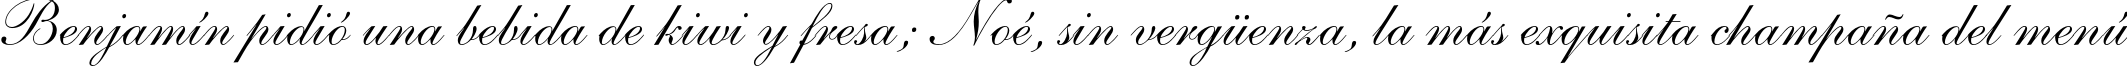 Пример написания шрифтом Shelley Script LT Std текста на испанском